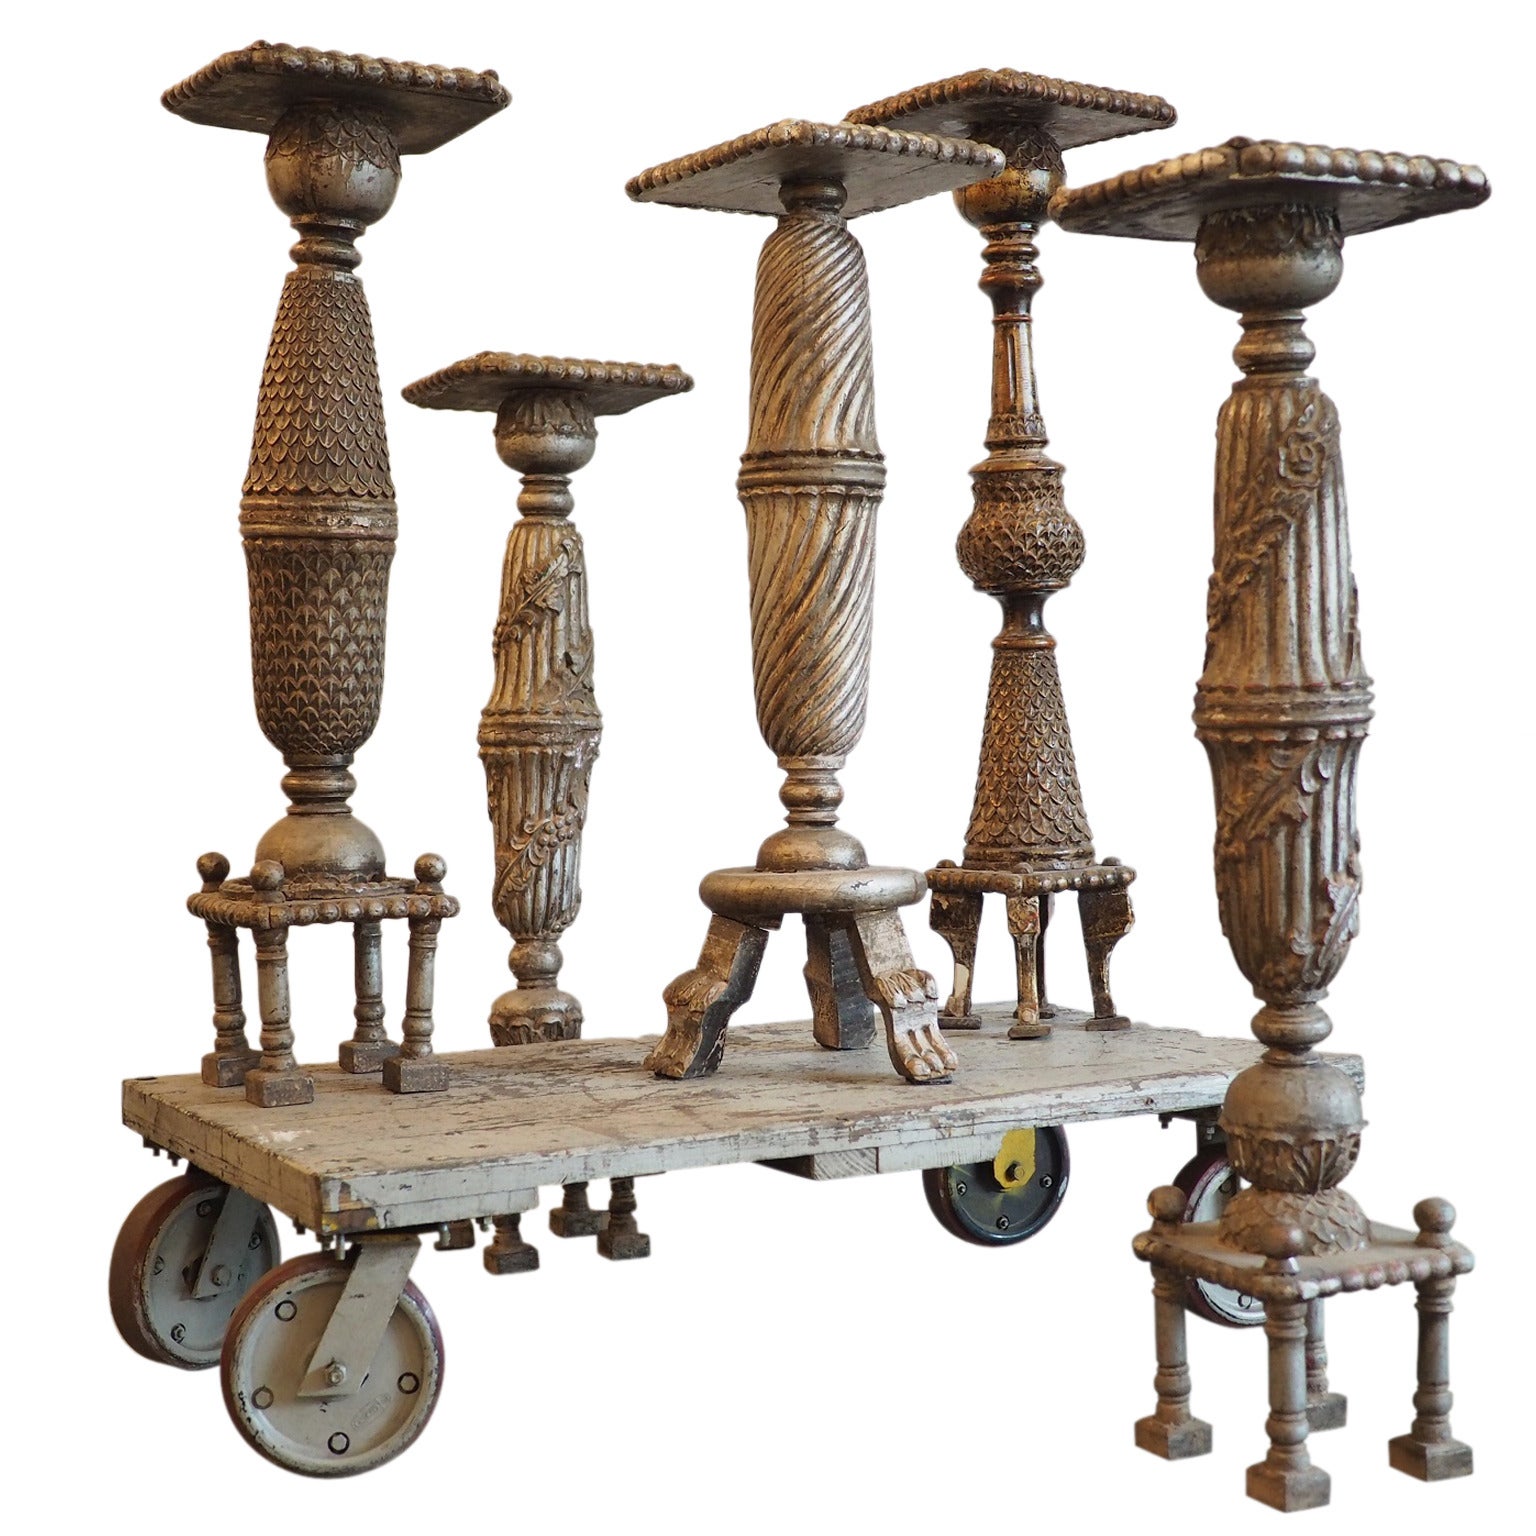 Carved Indian Pedestals For Sale